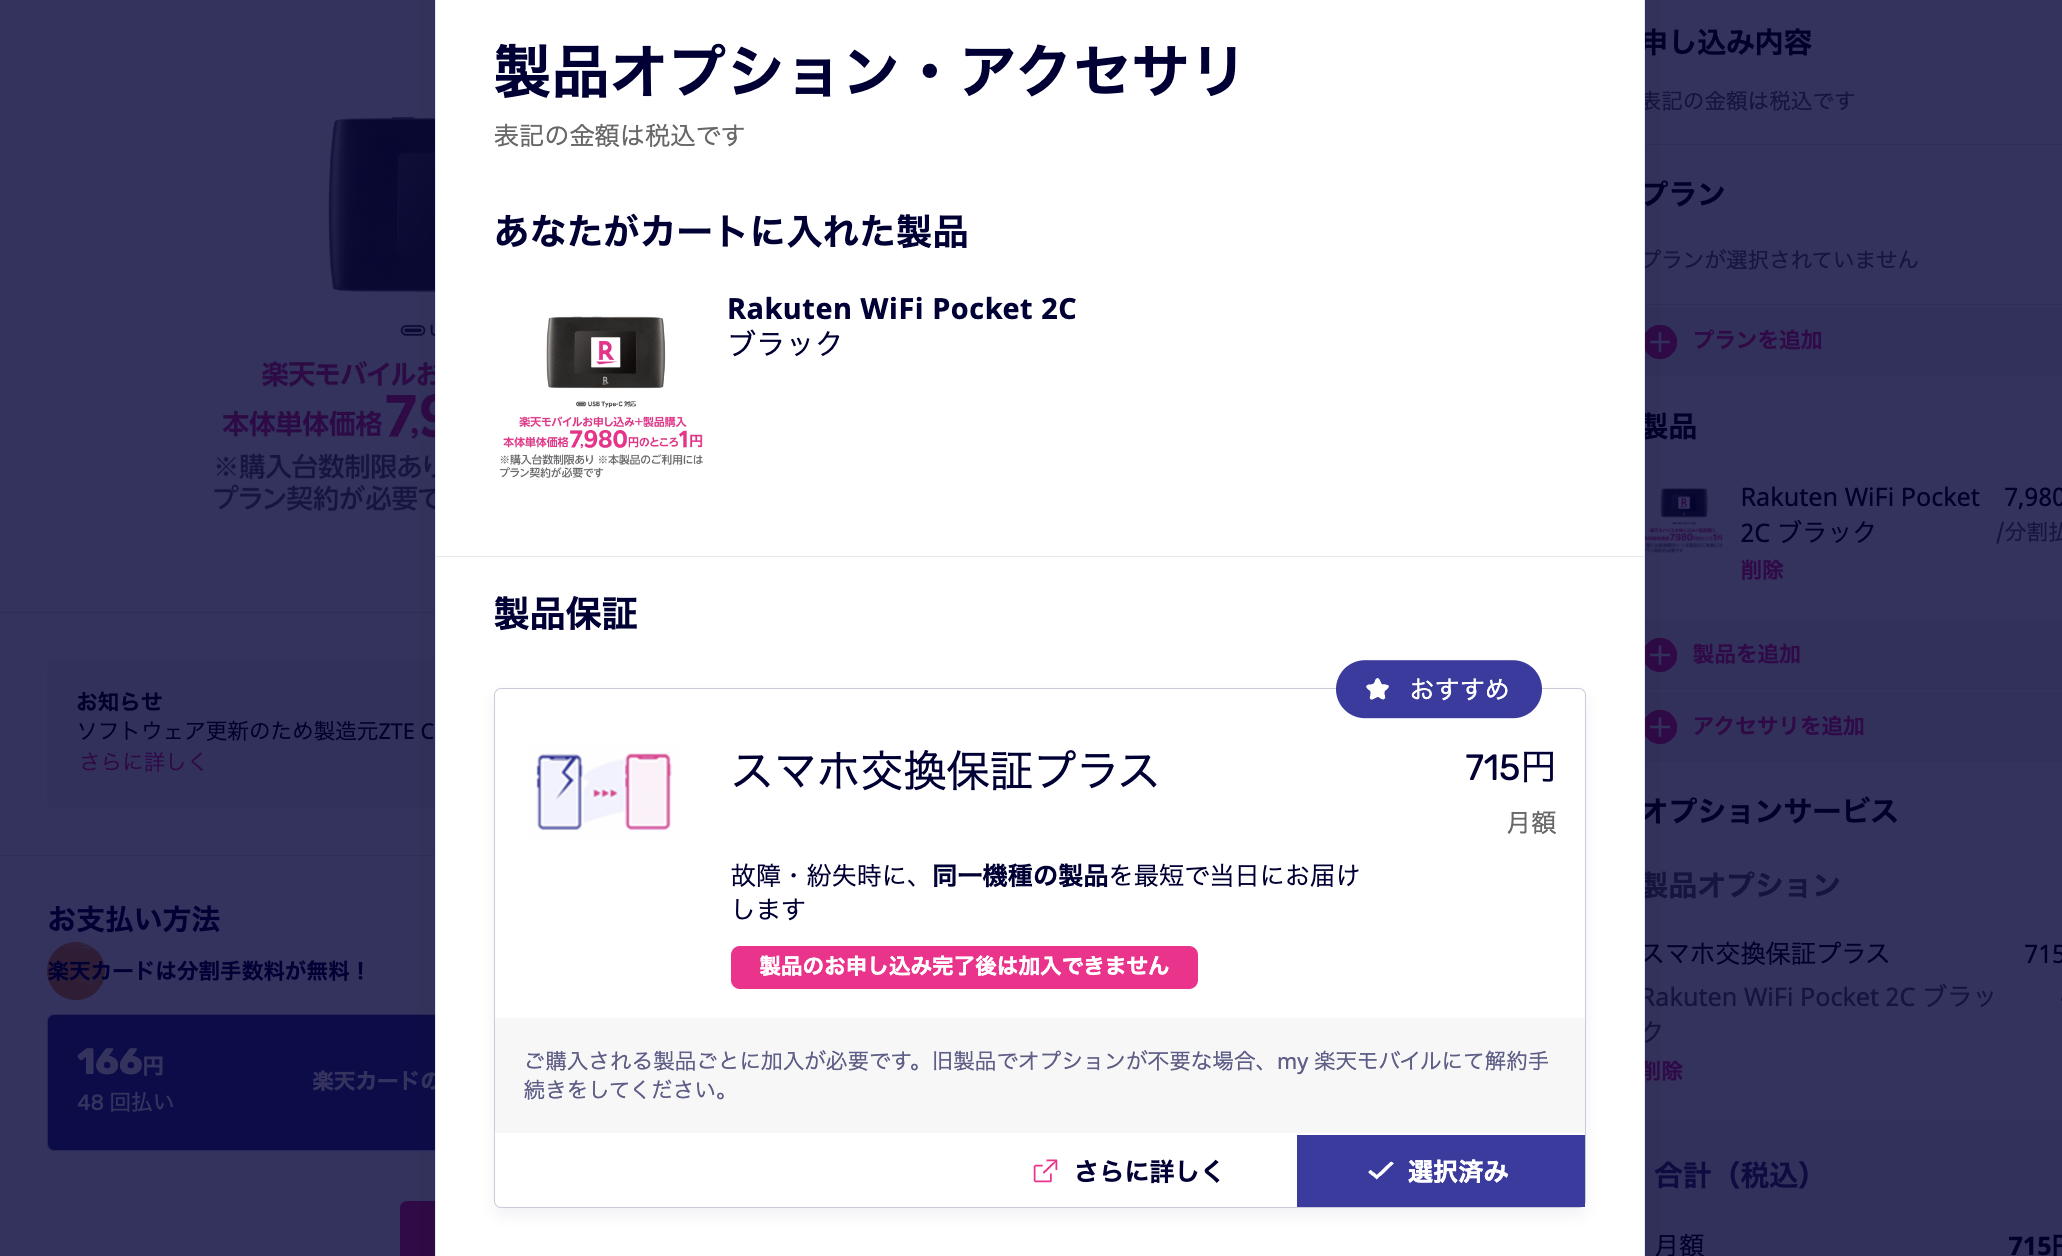 楽天モバイル「Rakuten WiFi Pocket 2C」のオプション選択ページ